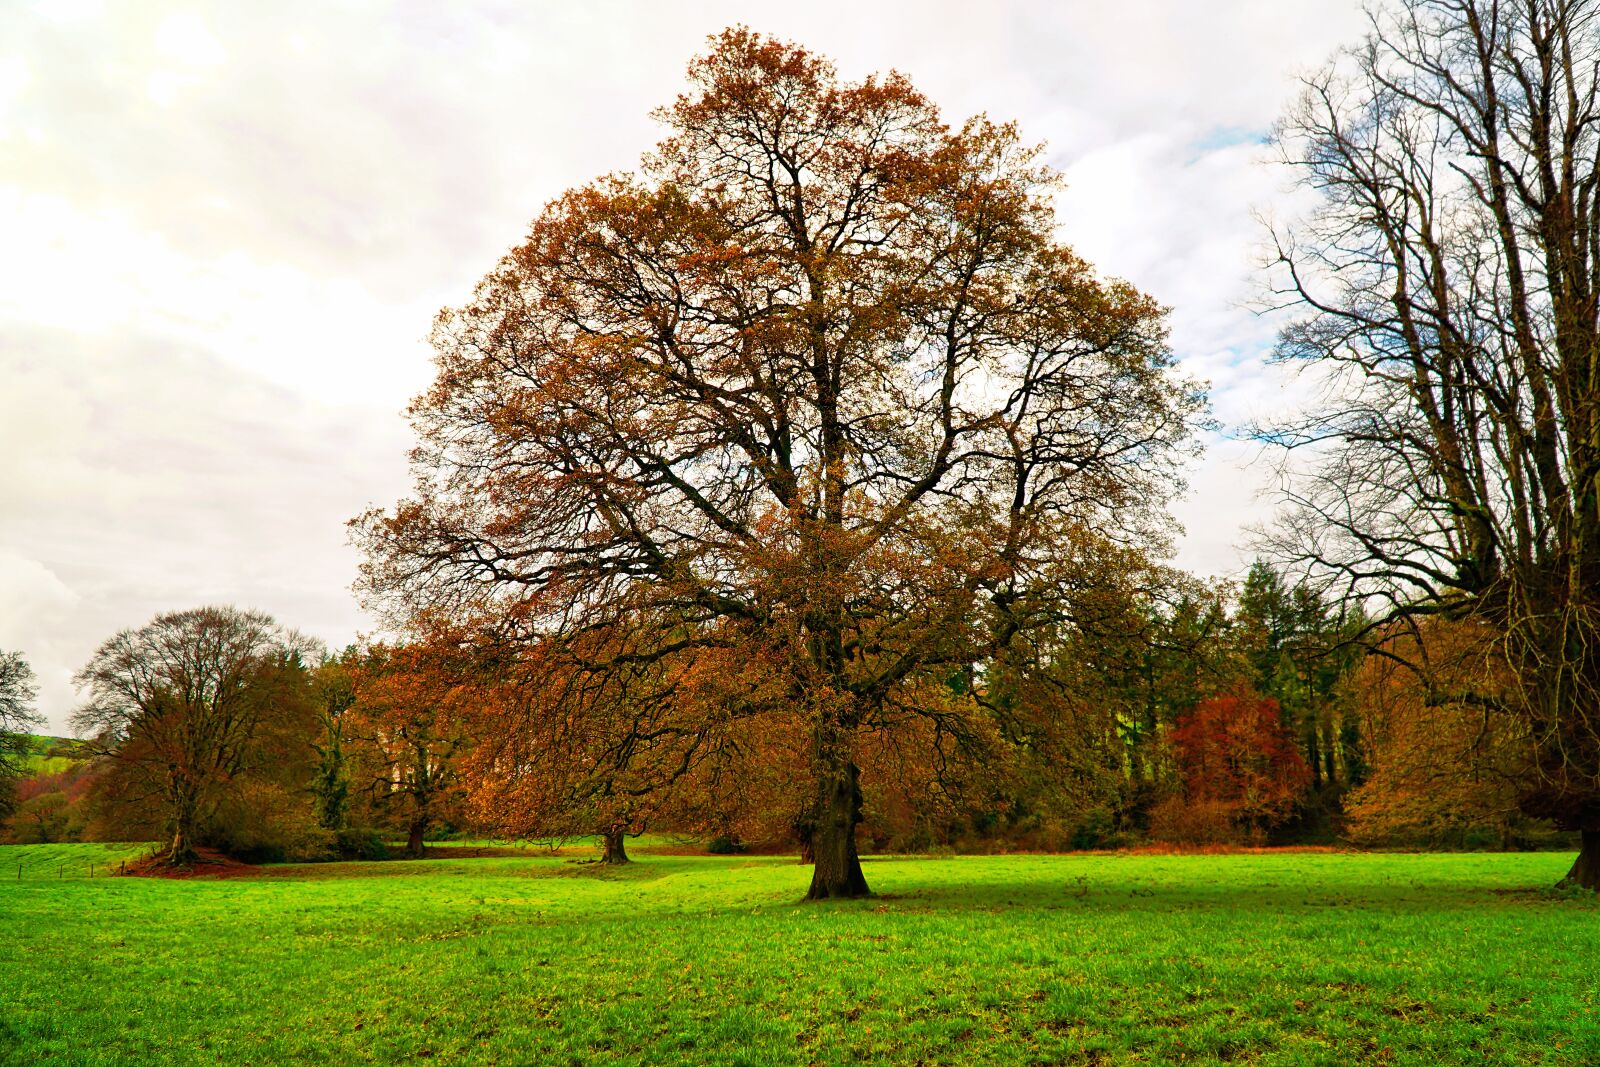 Sony a6300 sample photo. Autumn, tree, trees photography